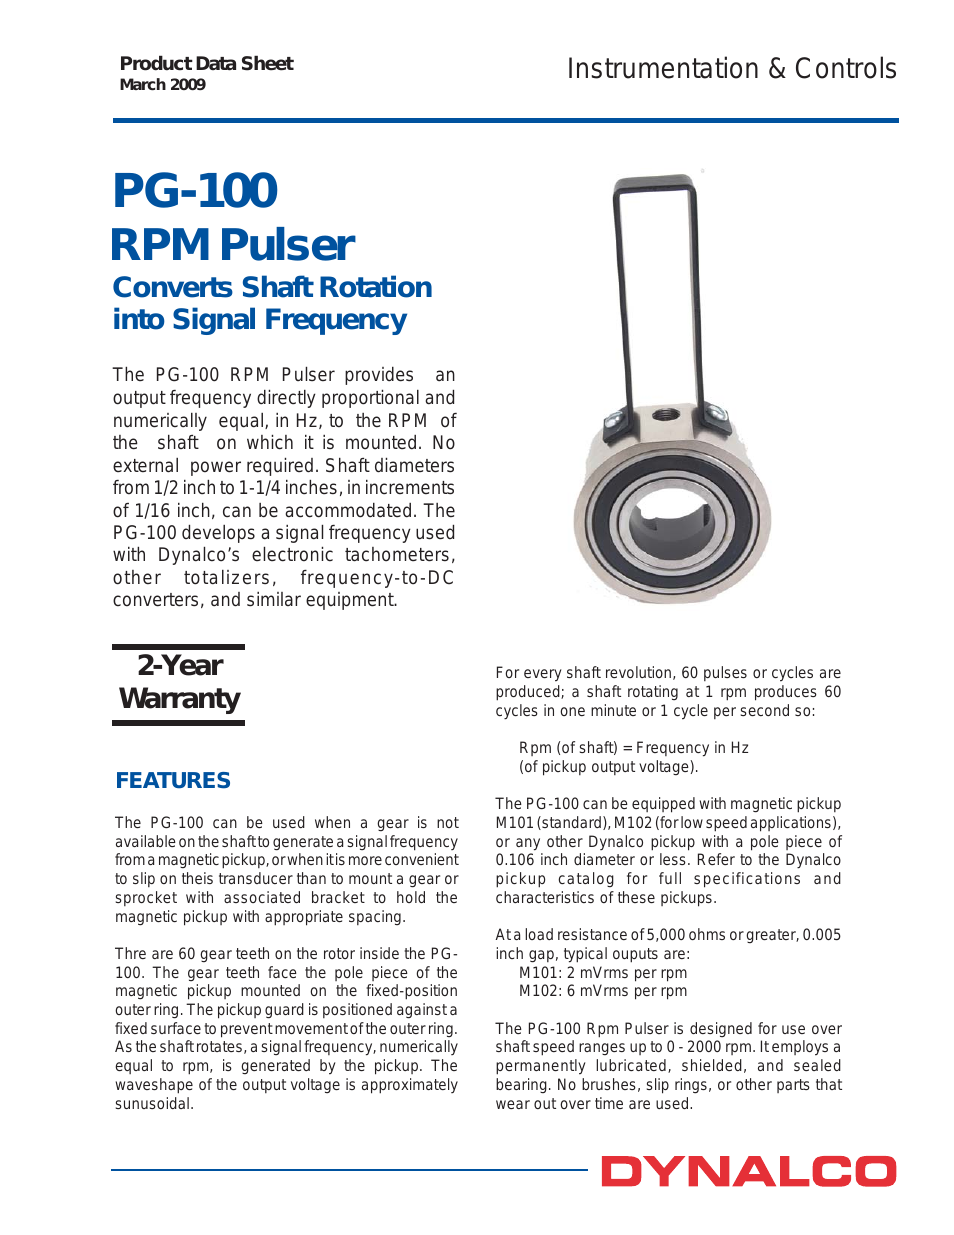 PG-100 Pulser